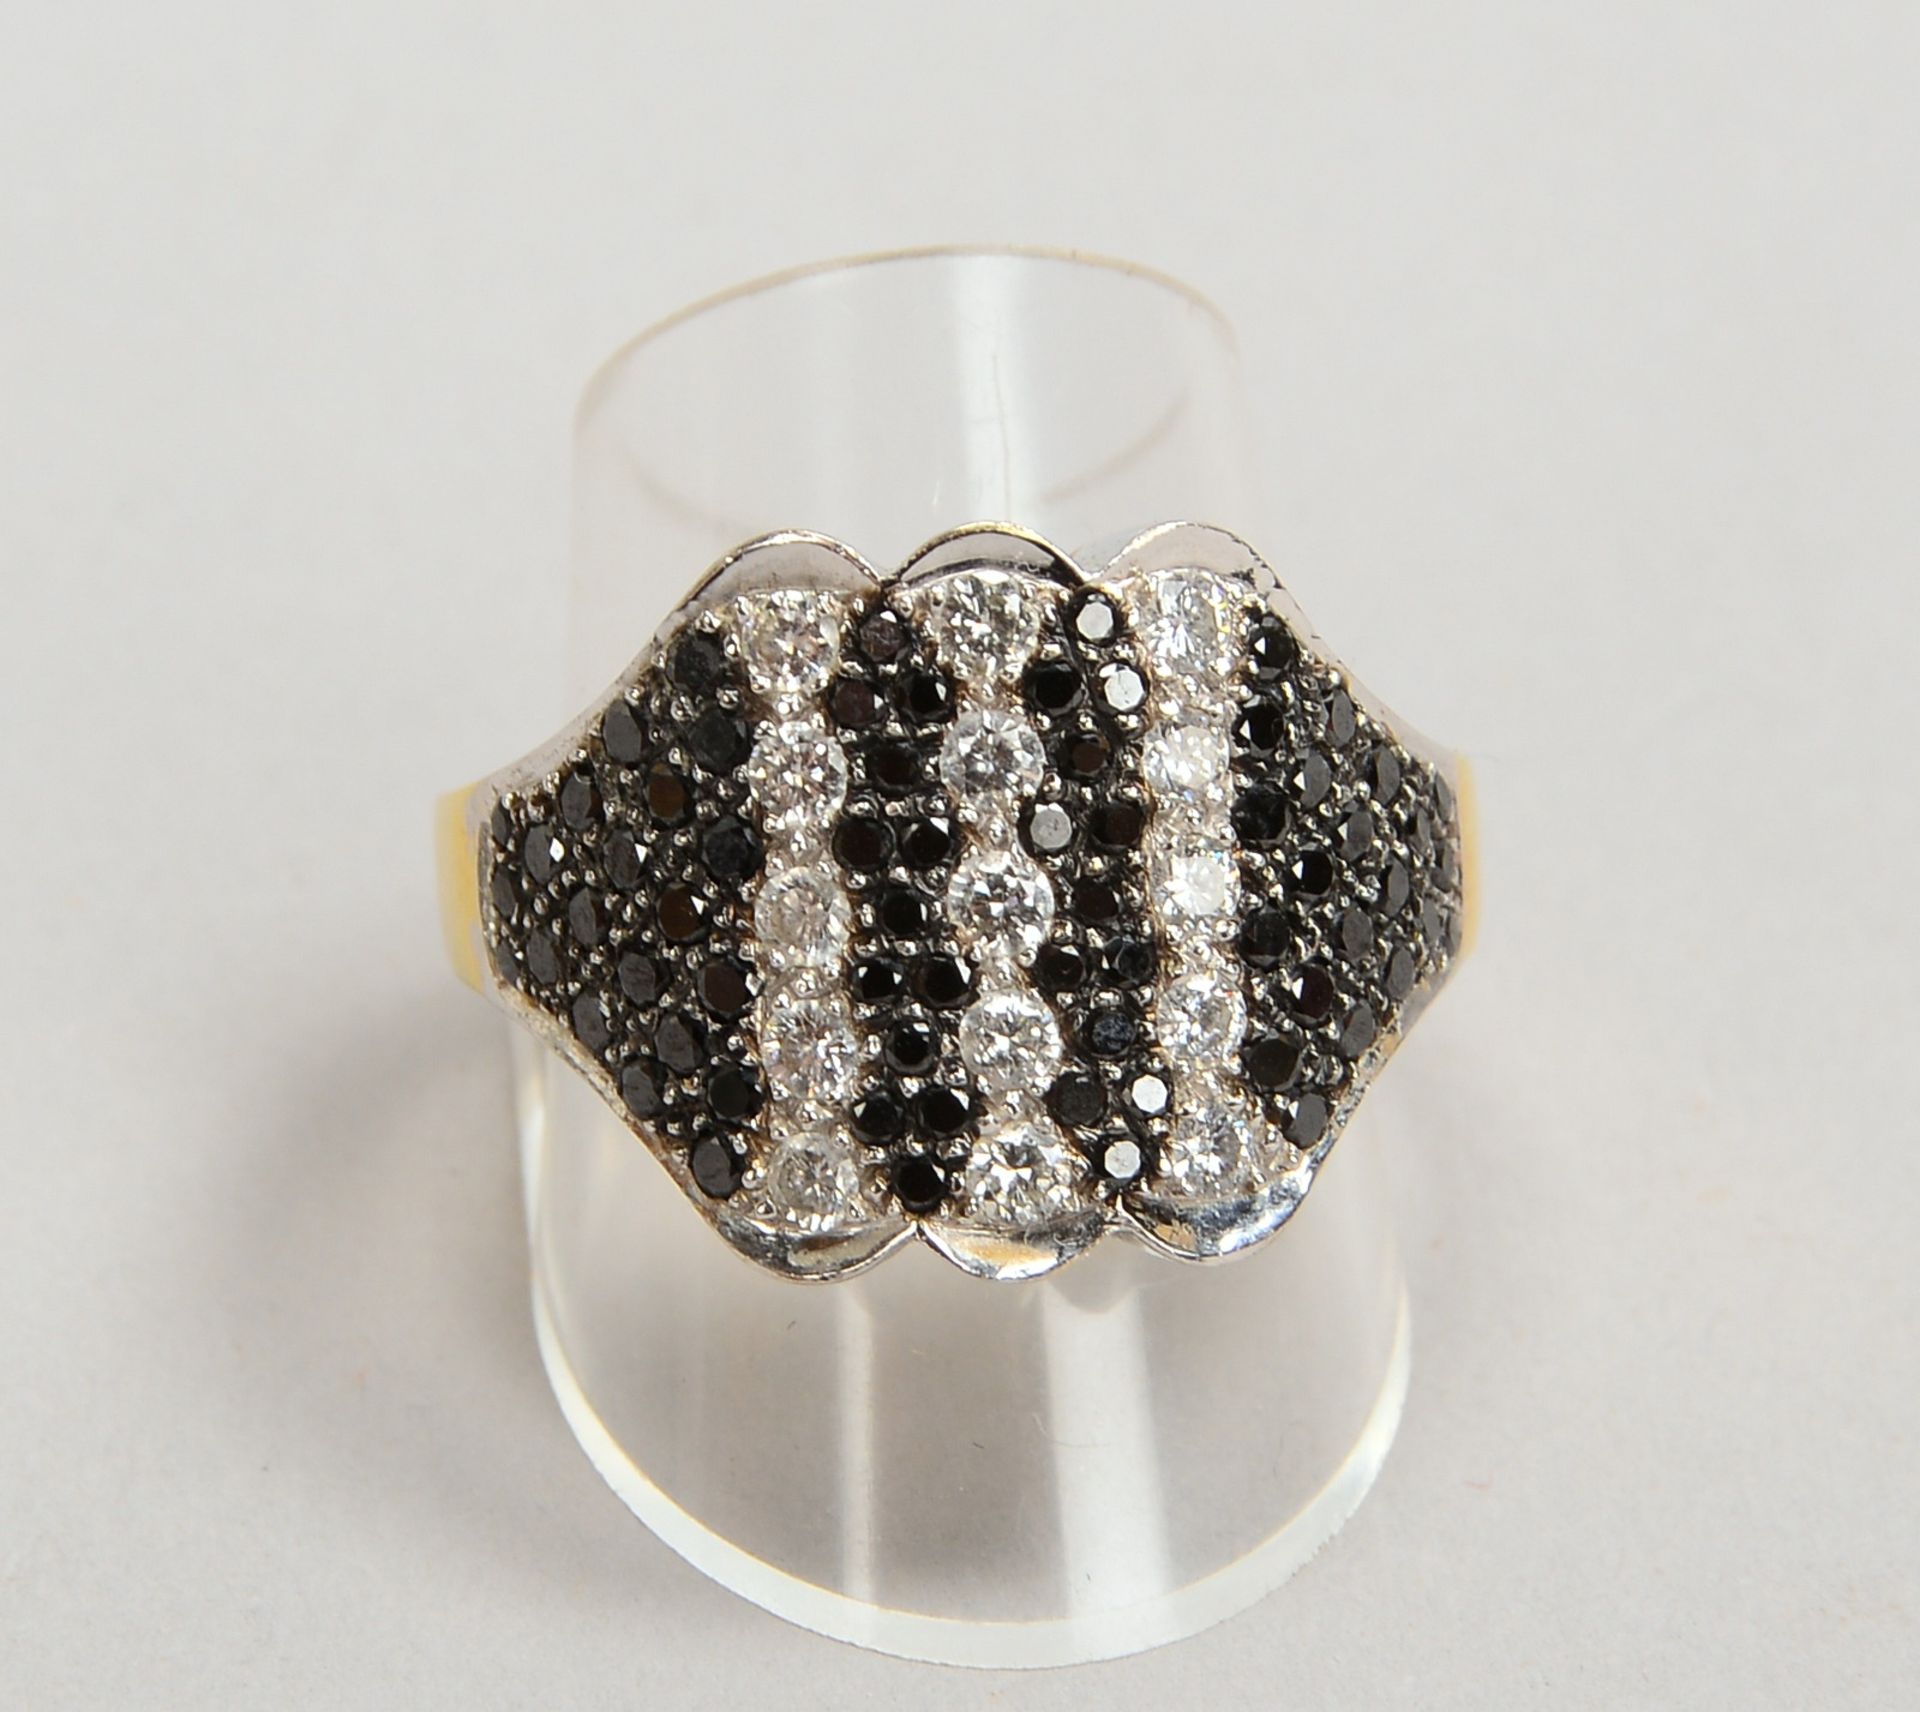 Ring, 750 GG/WG, mit Brill./ca. 1,20 ct, Farben Weiß und Schwarz; RG 64, Gew. 14,40 g - Bild 2 aus 2